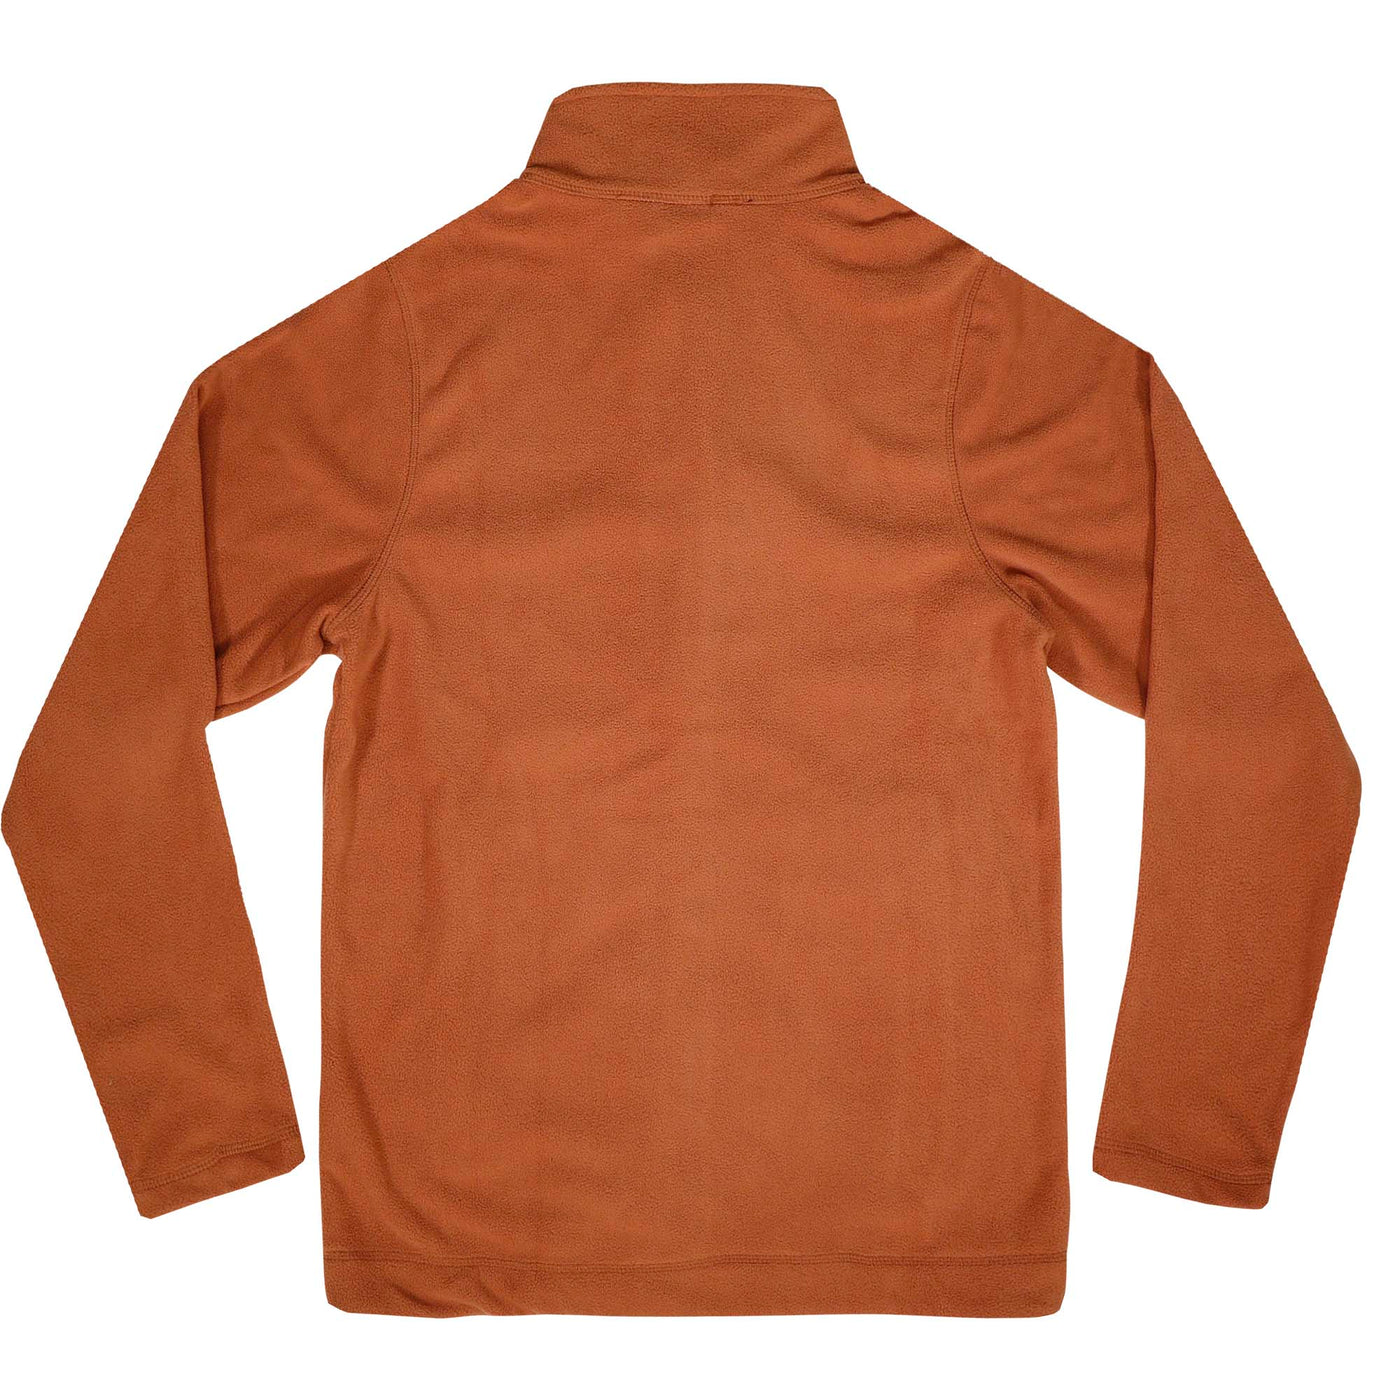 Mossy Oak Fleece Jacket Sierra Back 